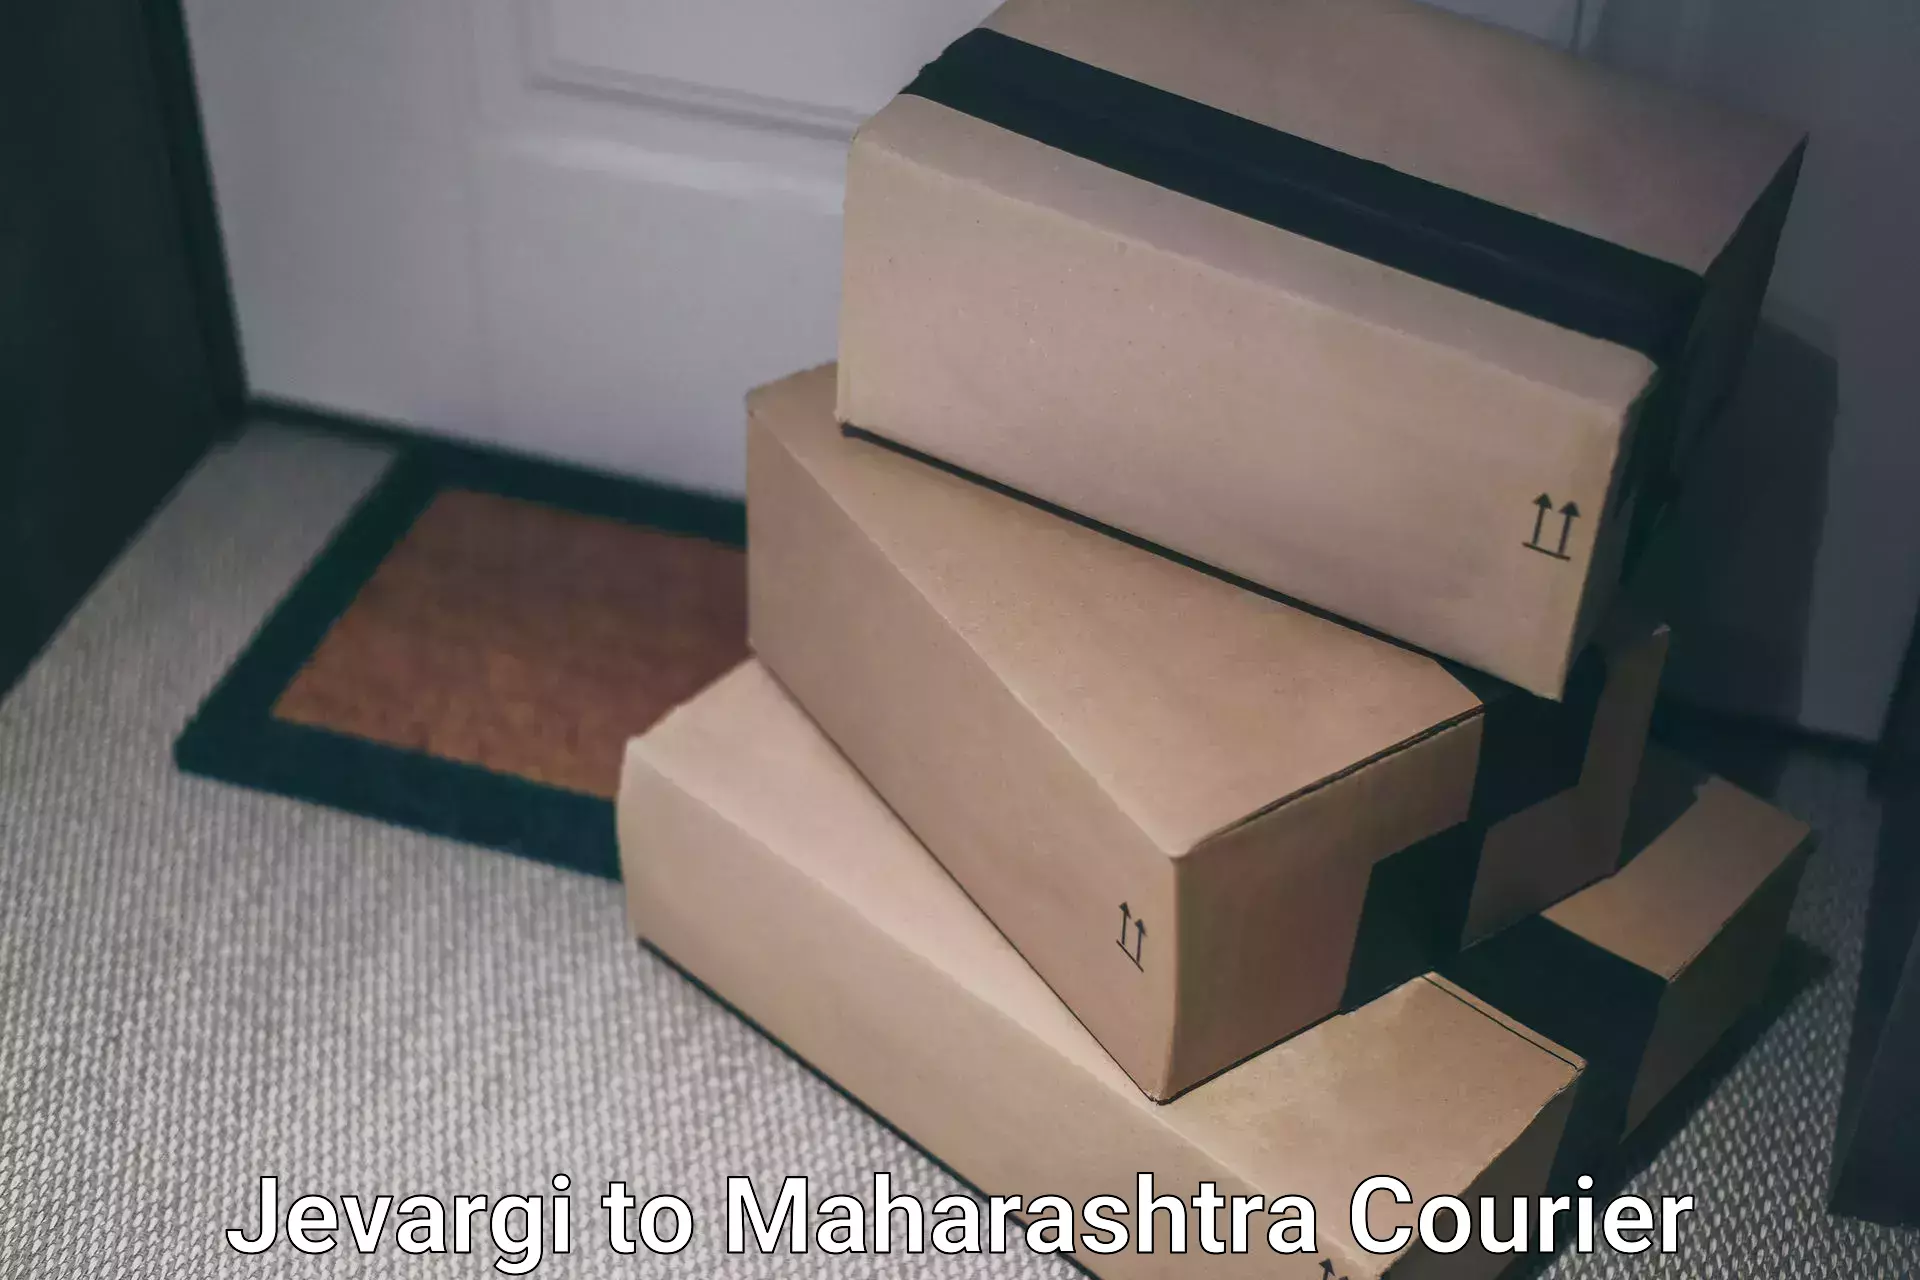 Express delivery capabilities Jevargi to Maharashtra